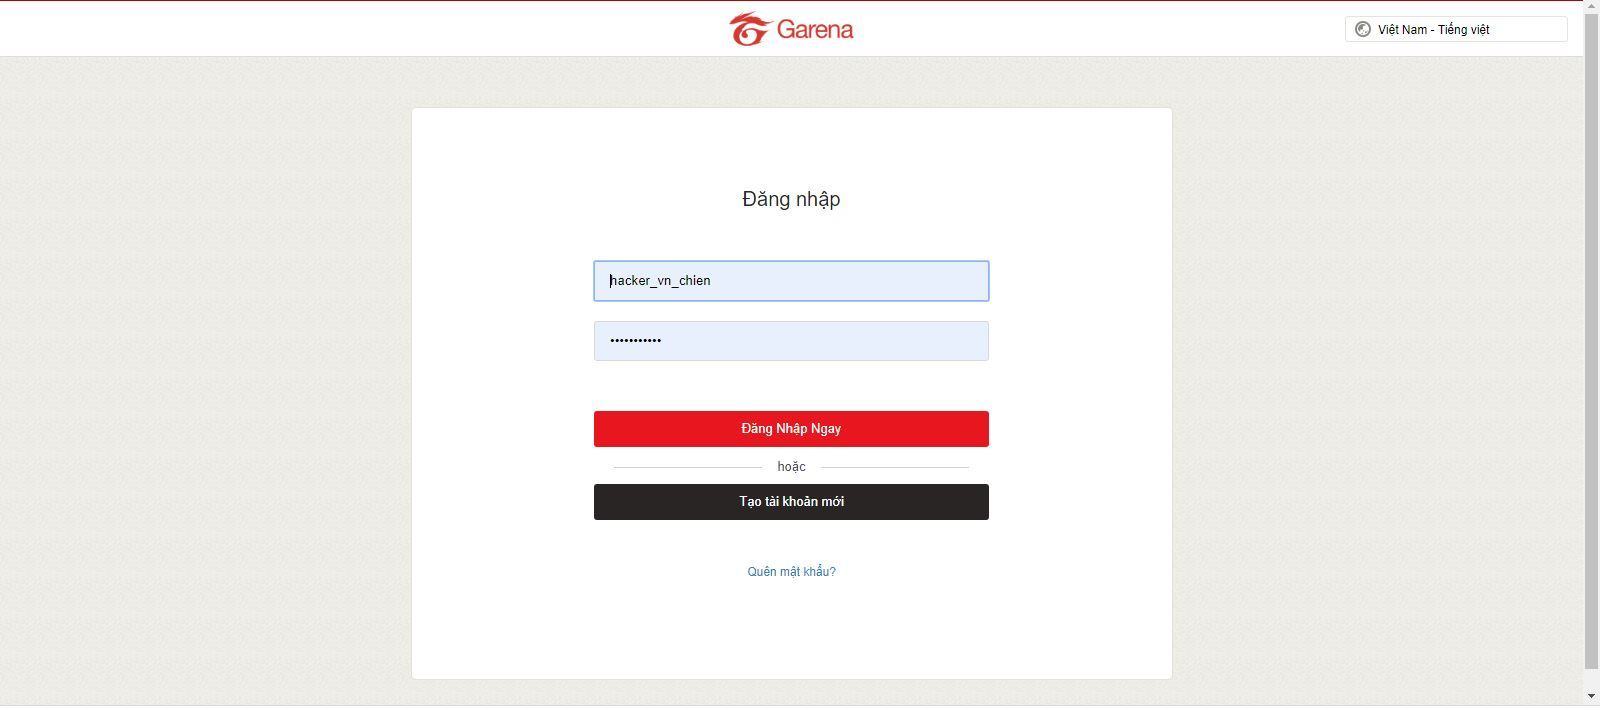 Hướng dẫn đổi số điện thoại tài khoản Garena 2020